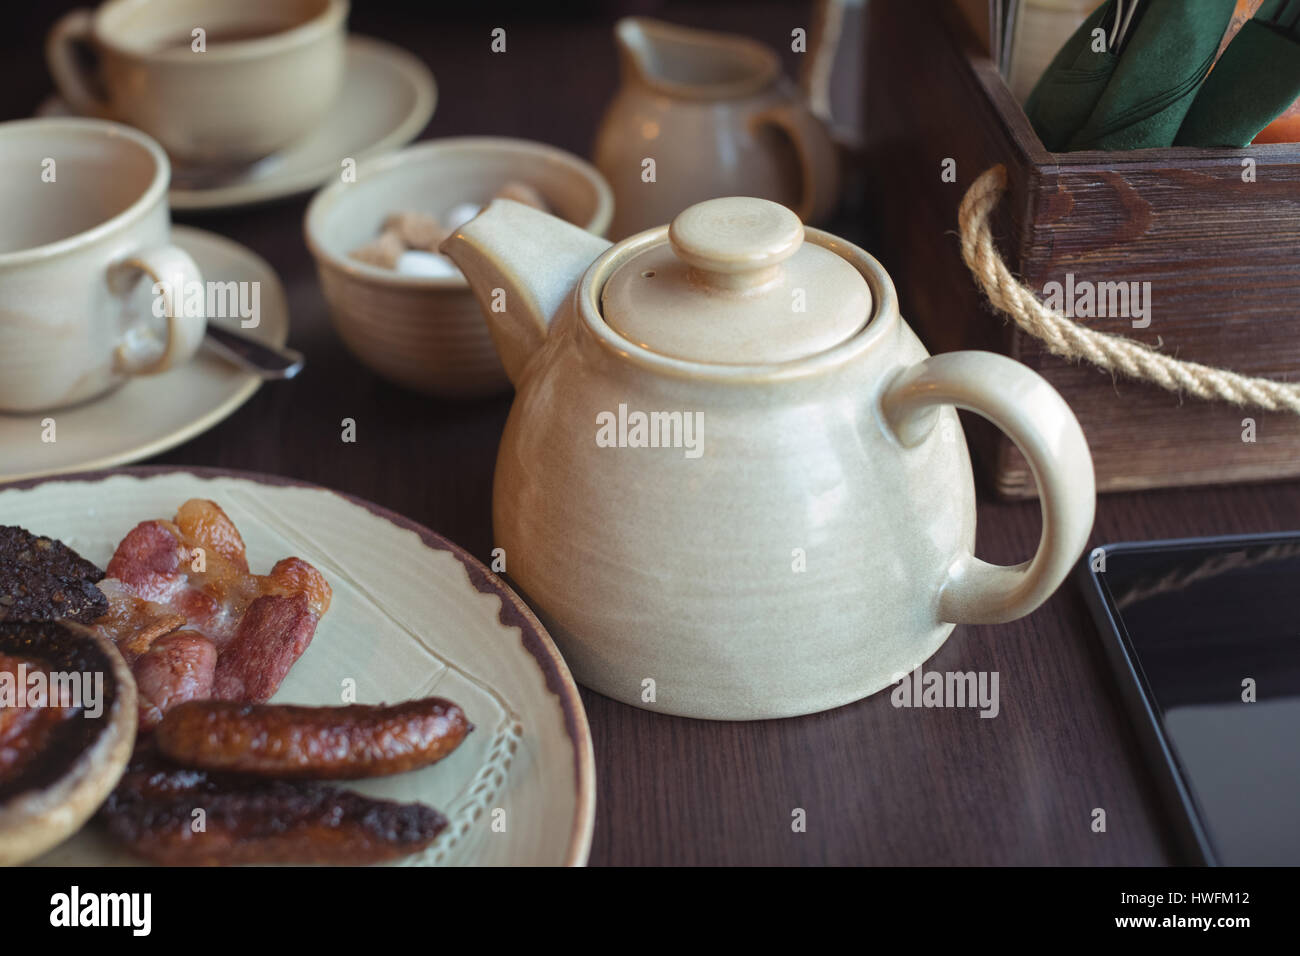 Nahaufnahme von Teekanne und Teller mit englisches Frühstück am Tisch in CafÃƒÂ © Stockfoto